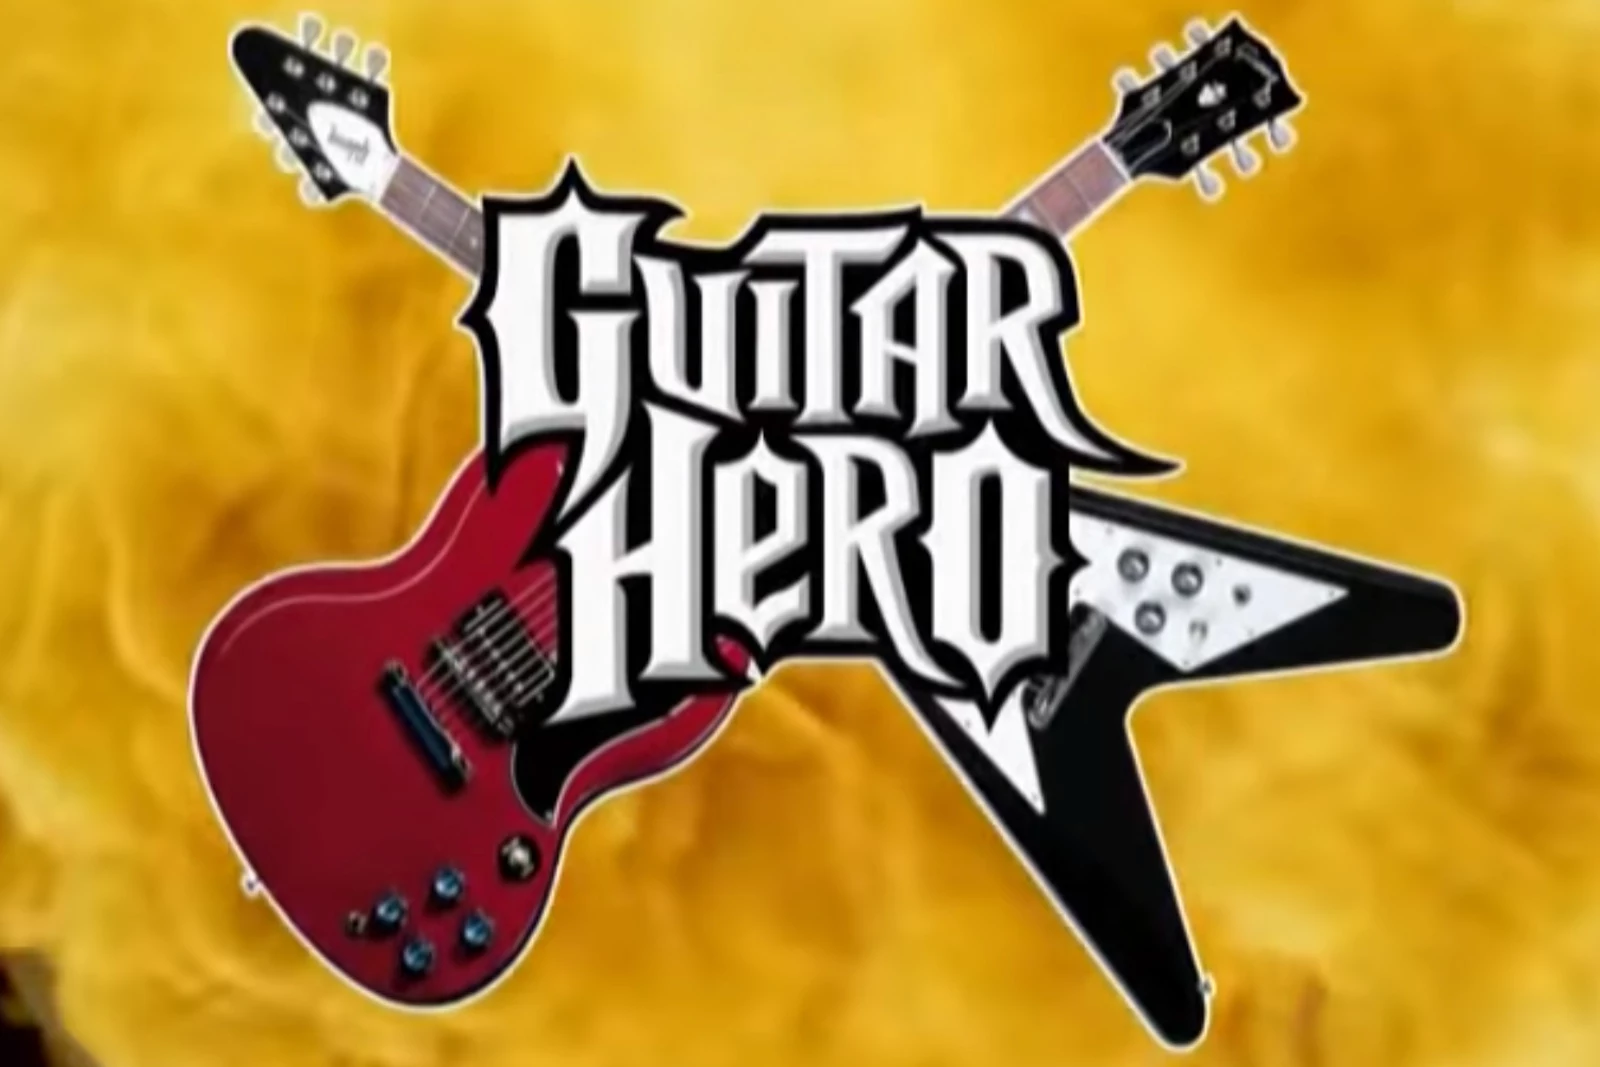 Guitar Hero 